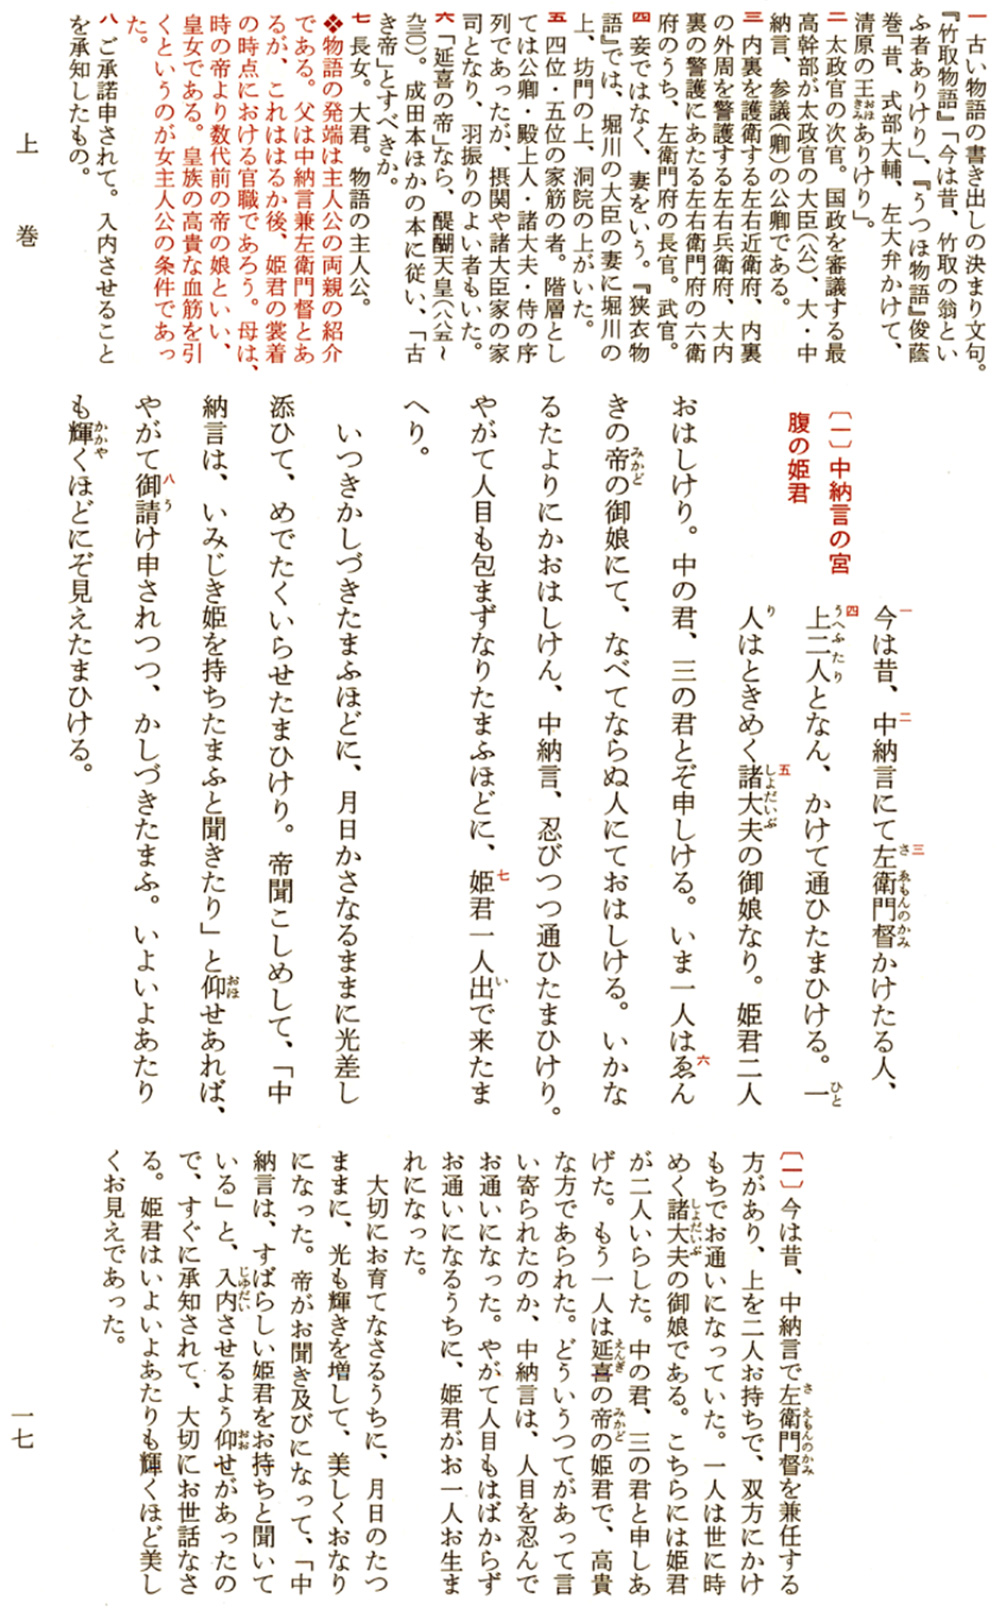 住吉物語 日本古典文学全集 世界大百科事典 ジャパンナレッジ